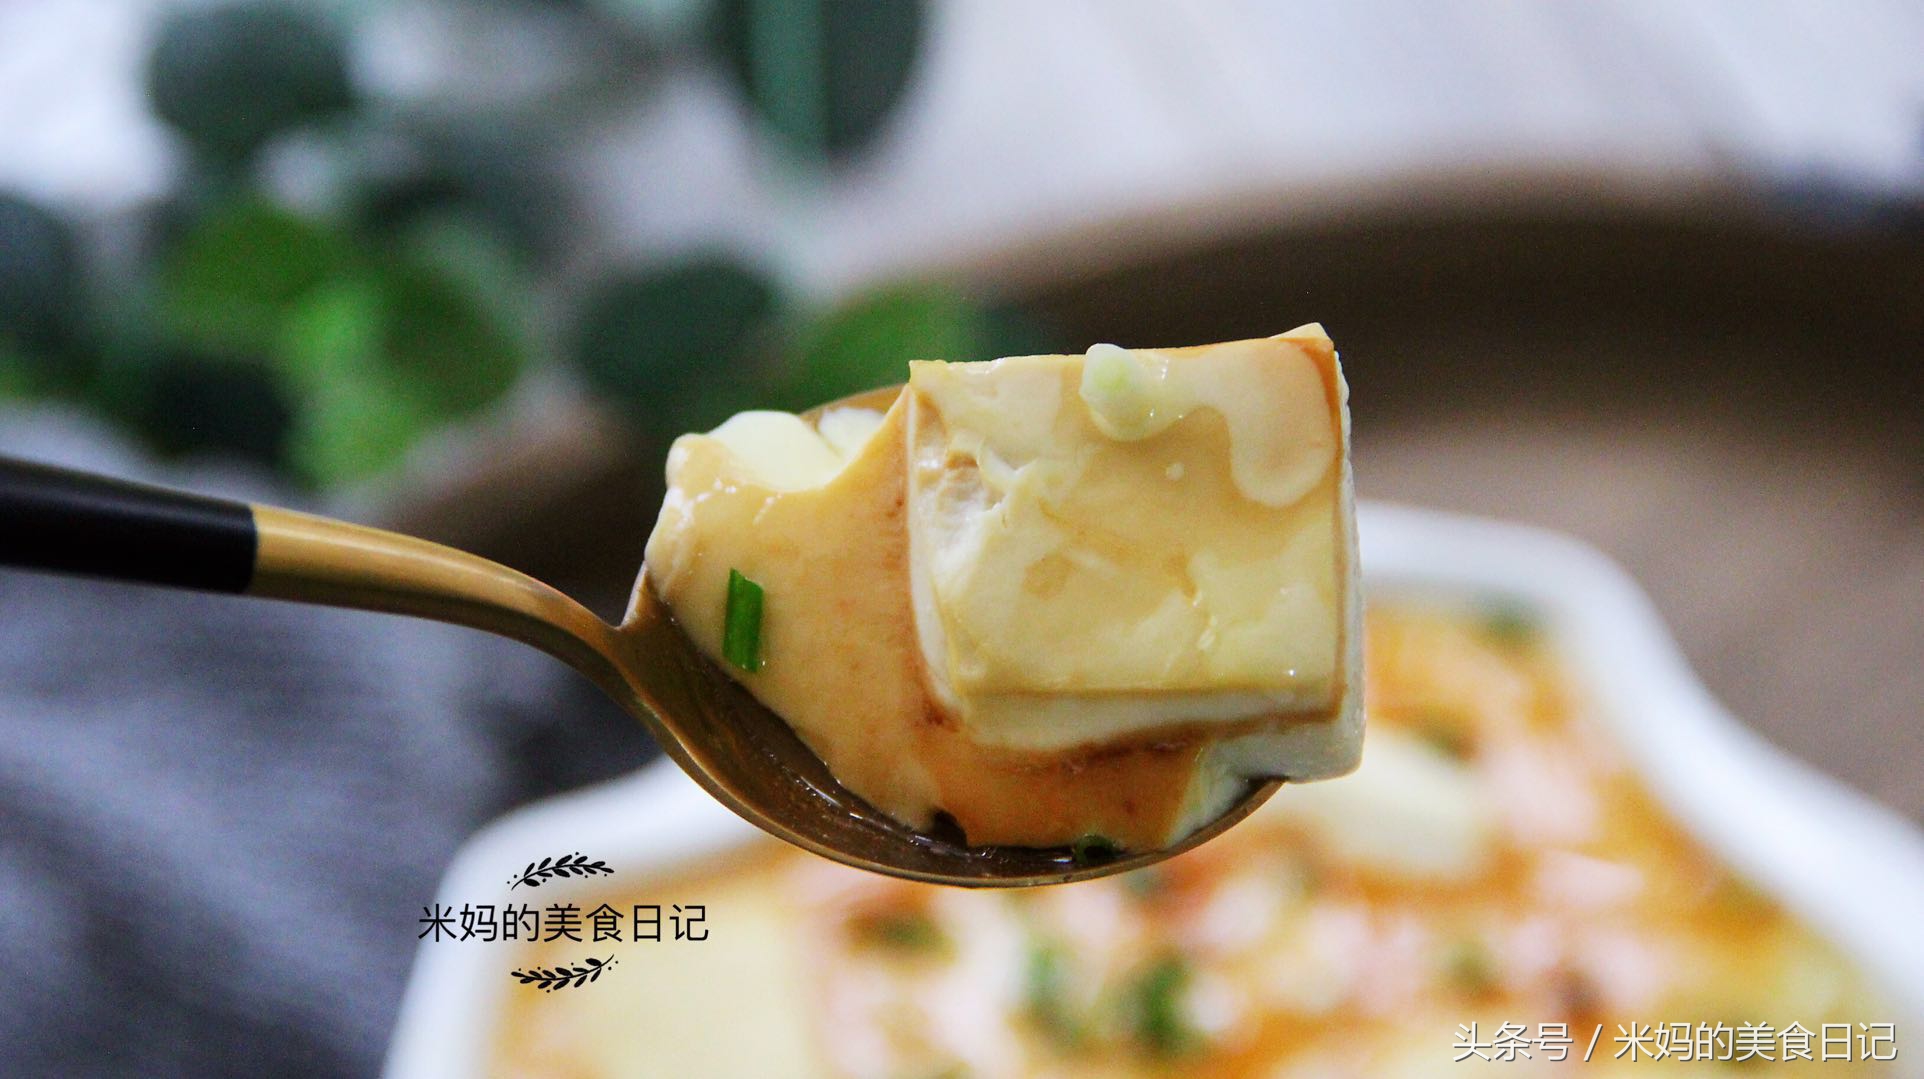 豆腐鸡蛋羹做法步骤图 这个菜再便宜也要经常做给孩子吃营养美-起舞食谱网